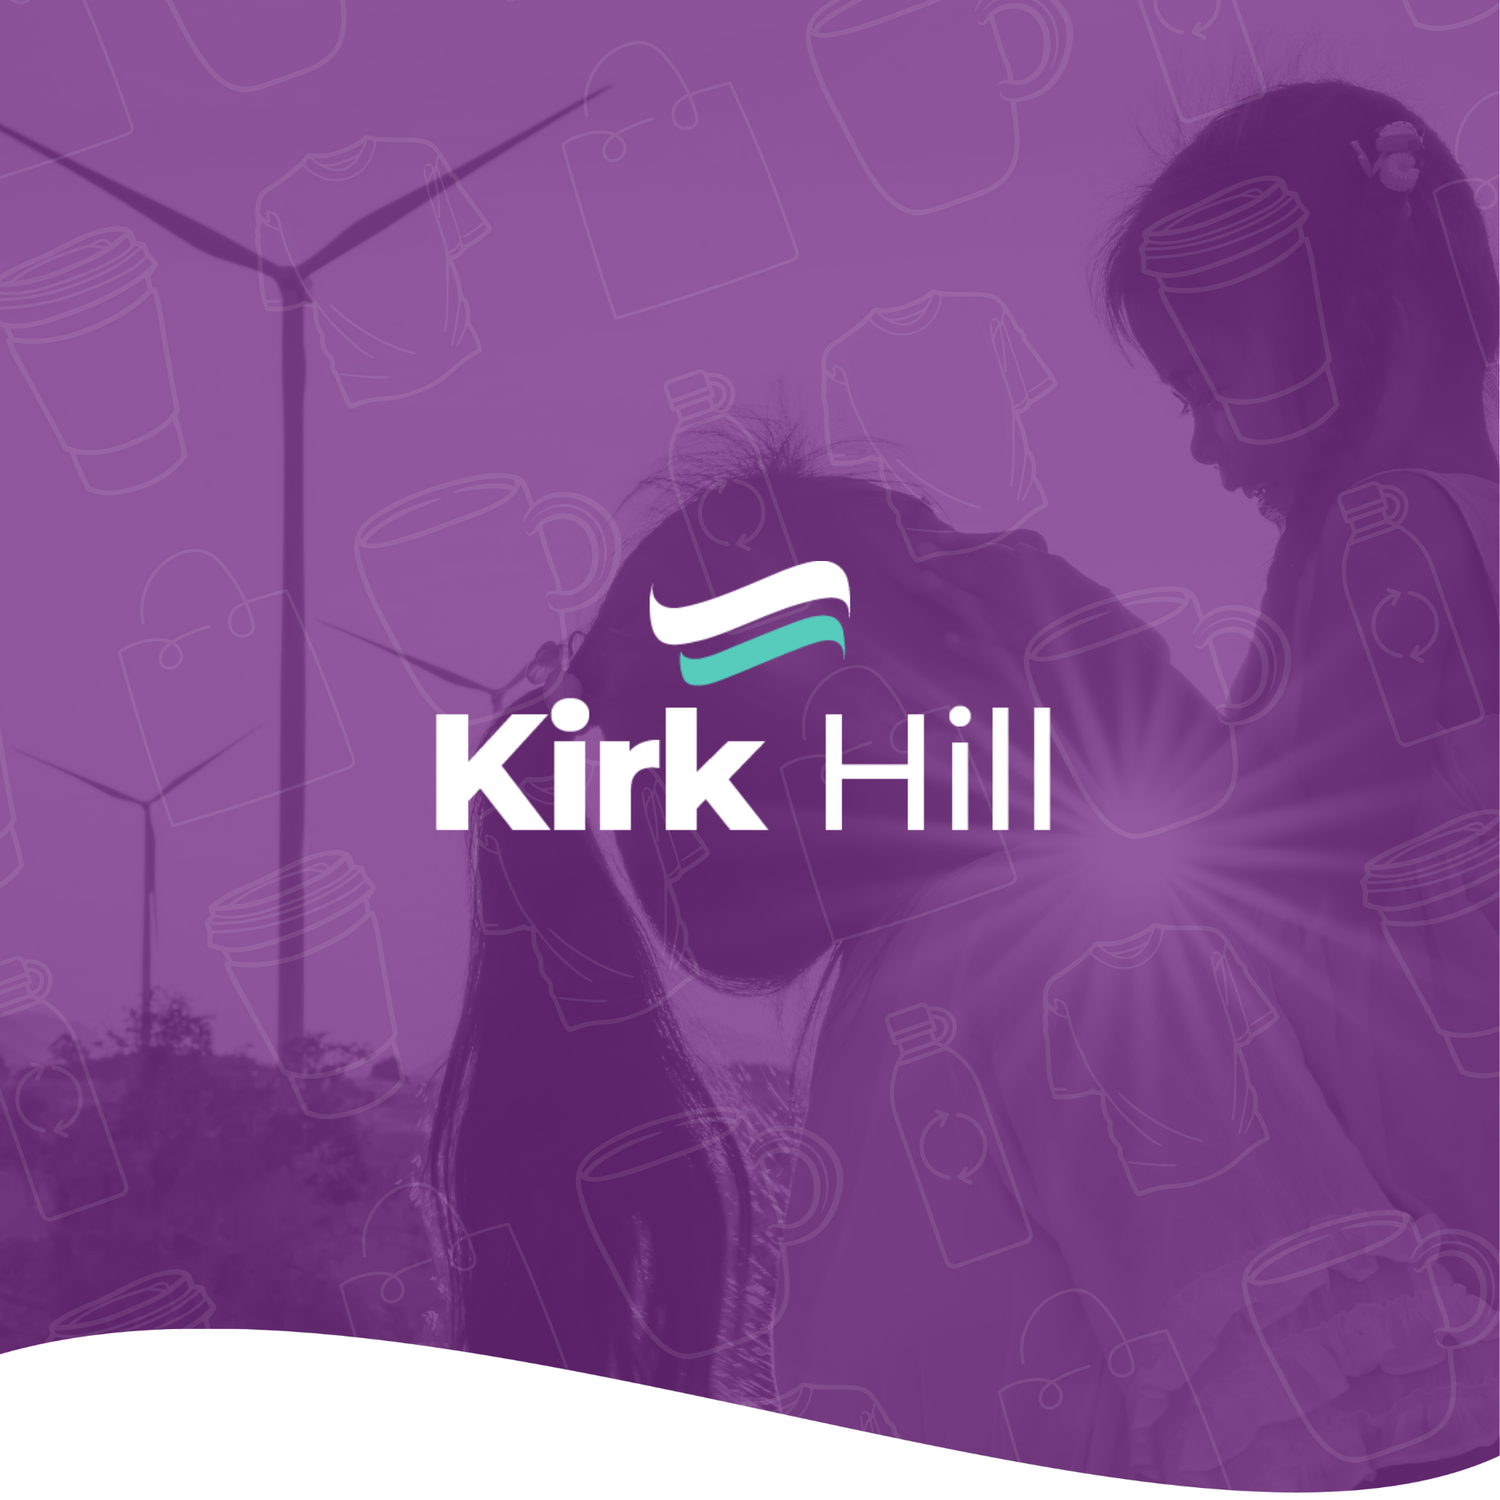 Kirk Hill